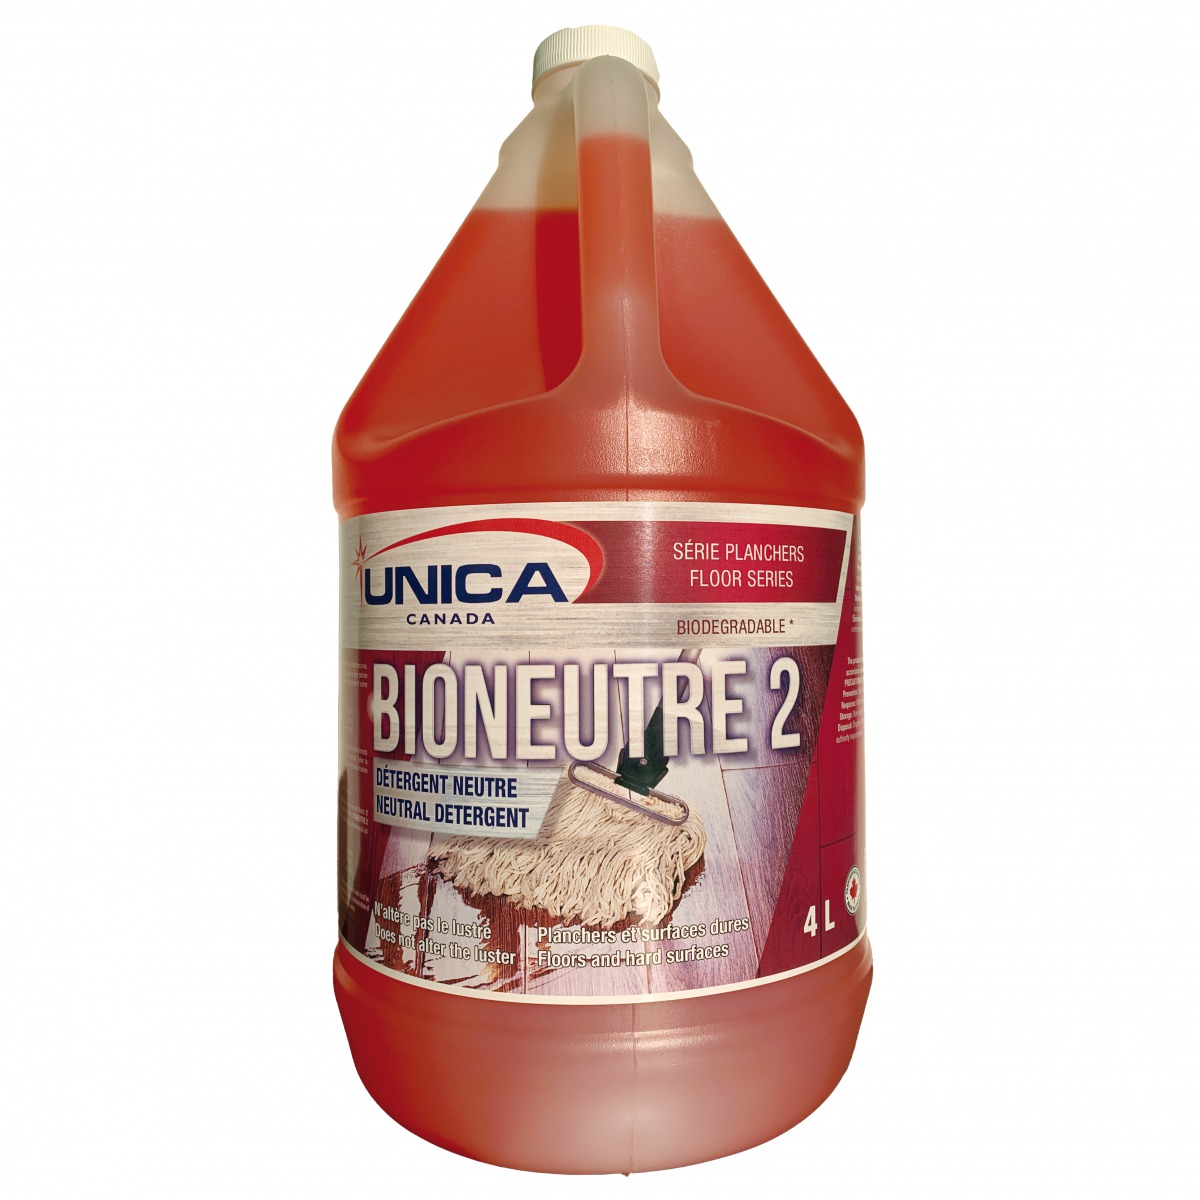 Bioneutre 2